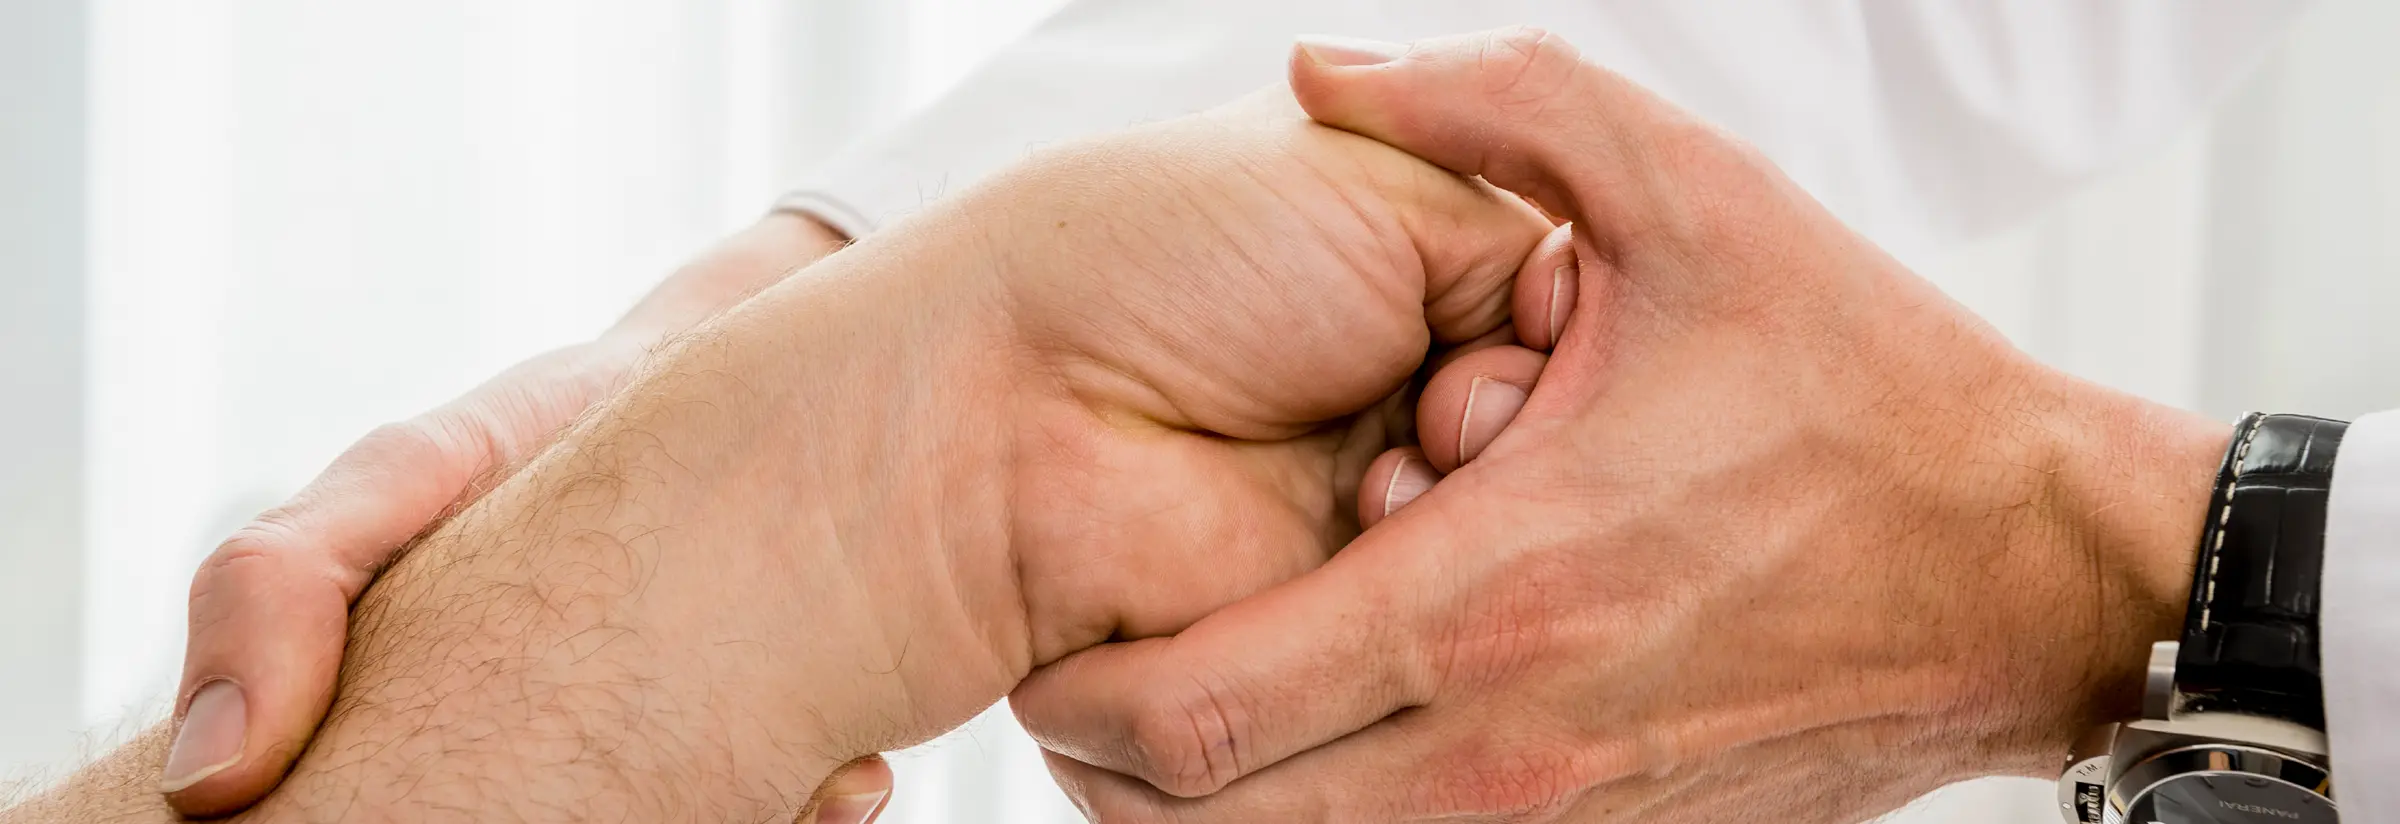 Handgelenkchirurgie – Ursachen für Schmerzen finden